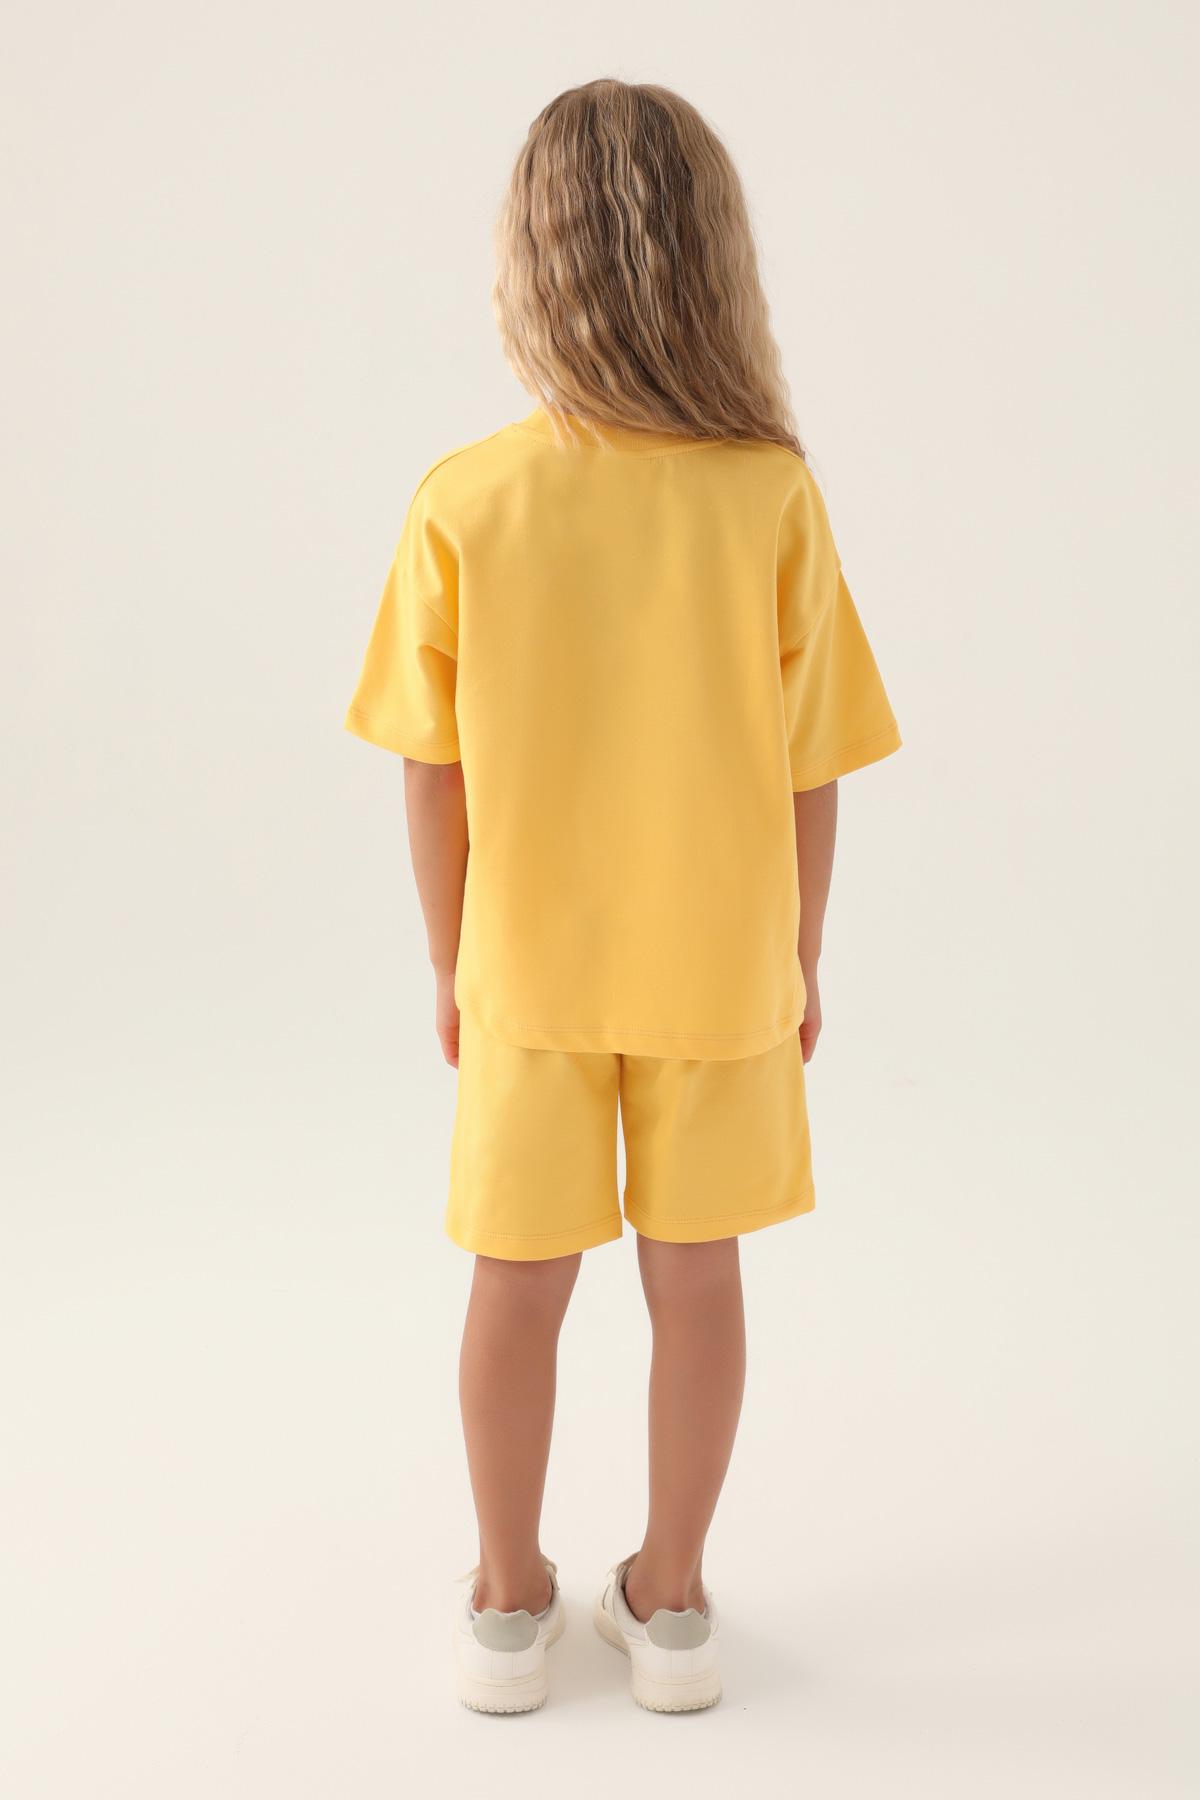 Selected image for U.S. Polo Assn. Komplet za devojčice US1822-4, Žuti